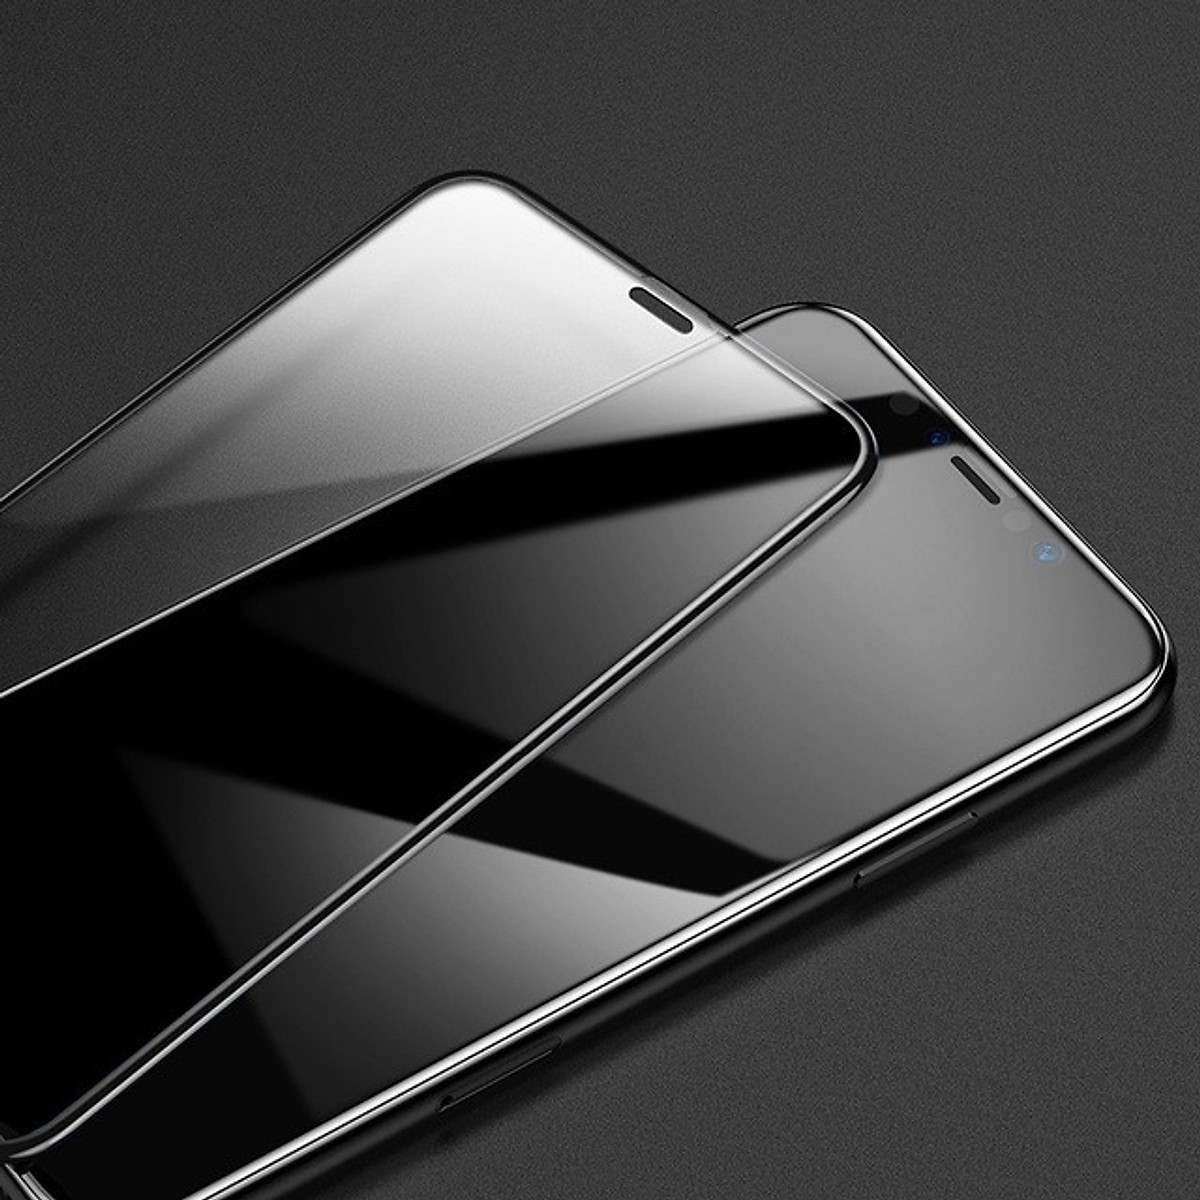 Bộ 2 Miếng dán kính cường lực Full 3D cho iPhone 11 6.1 / iPhone XR hiệu Baseus bảo vệ màng loa ngăn bụi bẩn (mỏng 0.3mm, Full màn 3D, Phủ Nano) - Hàng nhập khẩu